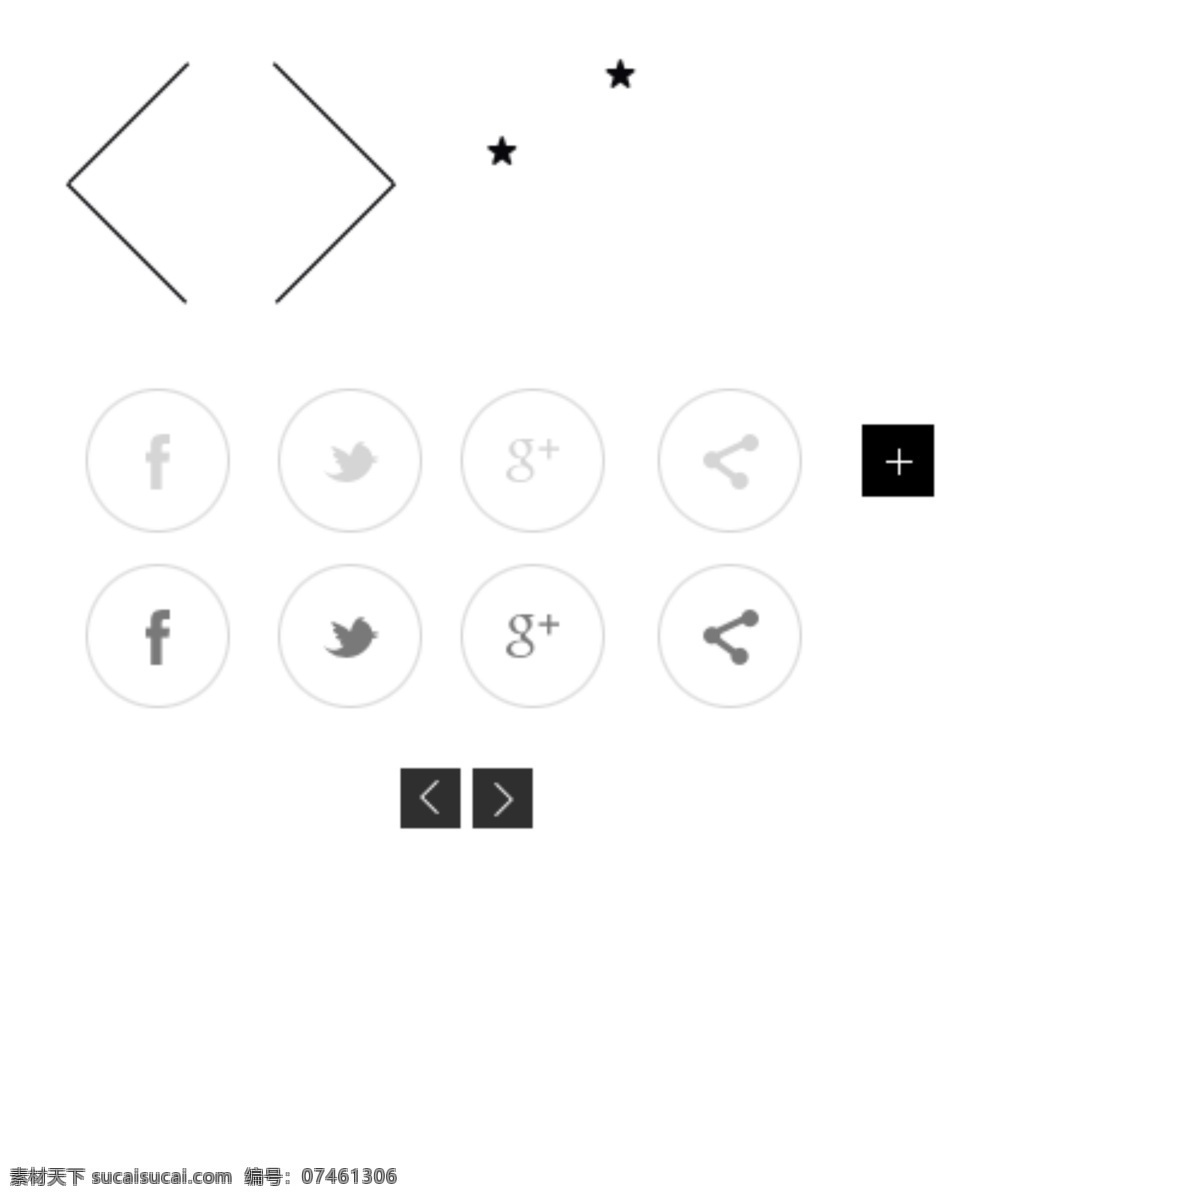 运动鞋 销售网站 html5 模板 ui设计 版式设计 界面设计 网页版式 网站菜单 商业 网站 分层 网站设计 黑白 大方 页面 网站焦点图 阿迪达斯 运动 装备 免费 网页素材 网页模板